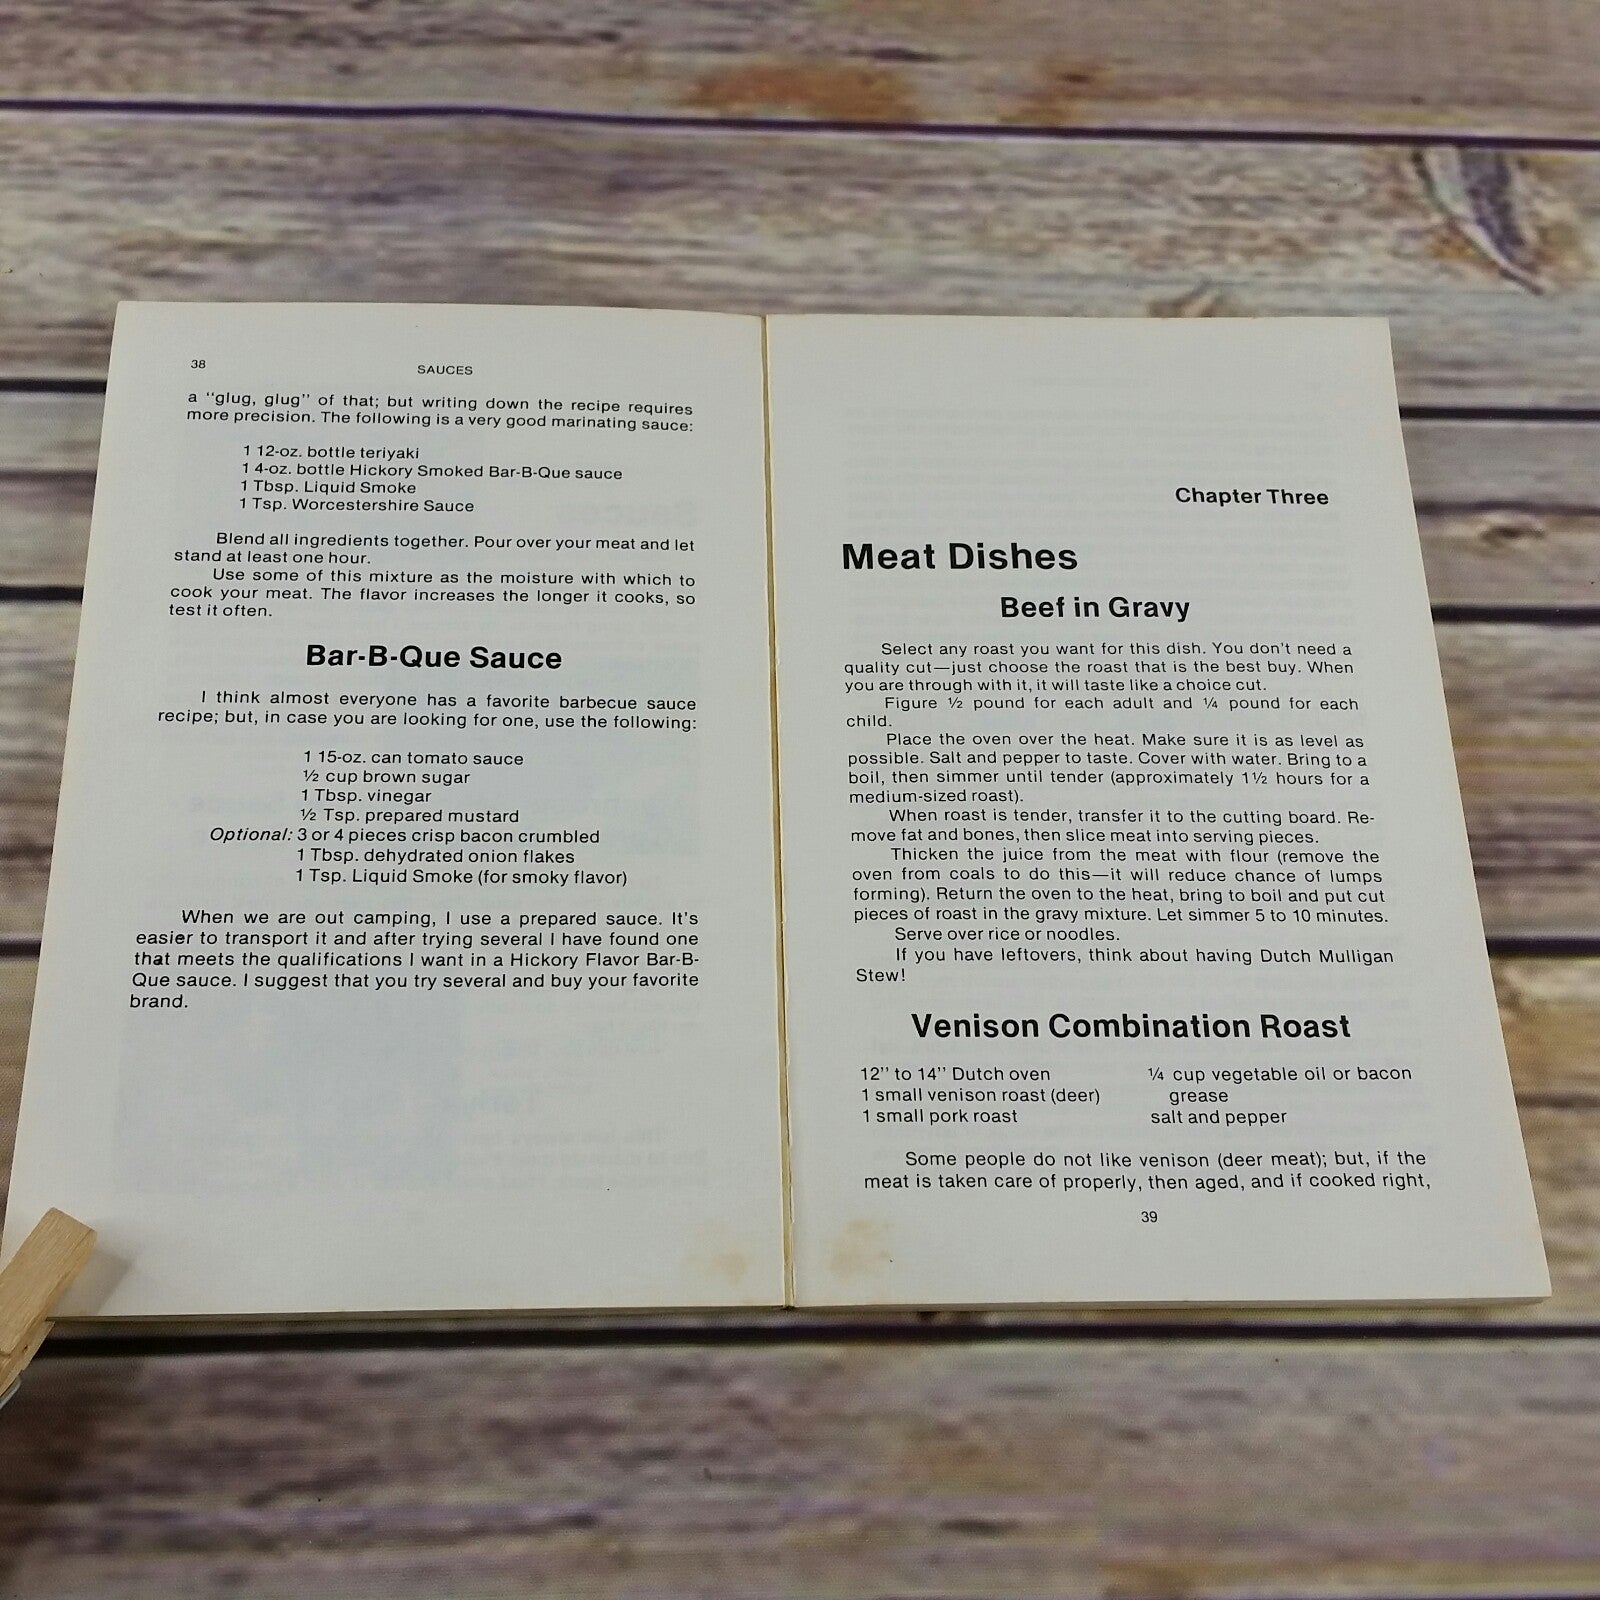 Vintage Dutch Oven Cookbook Lets Cook Dutch Vtg Recipes 1979 Robert Ririe Paperback - At Grandma's Table